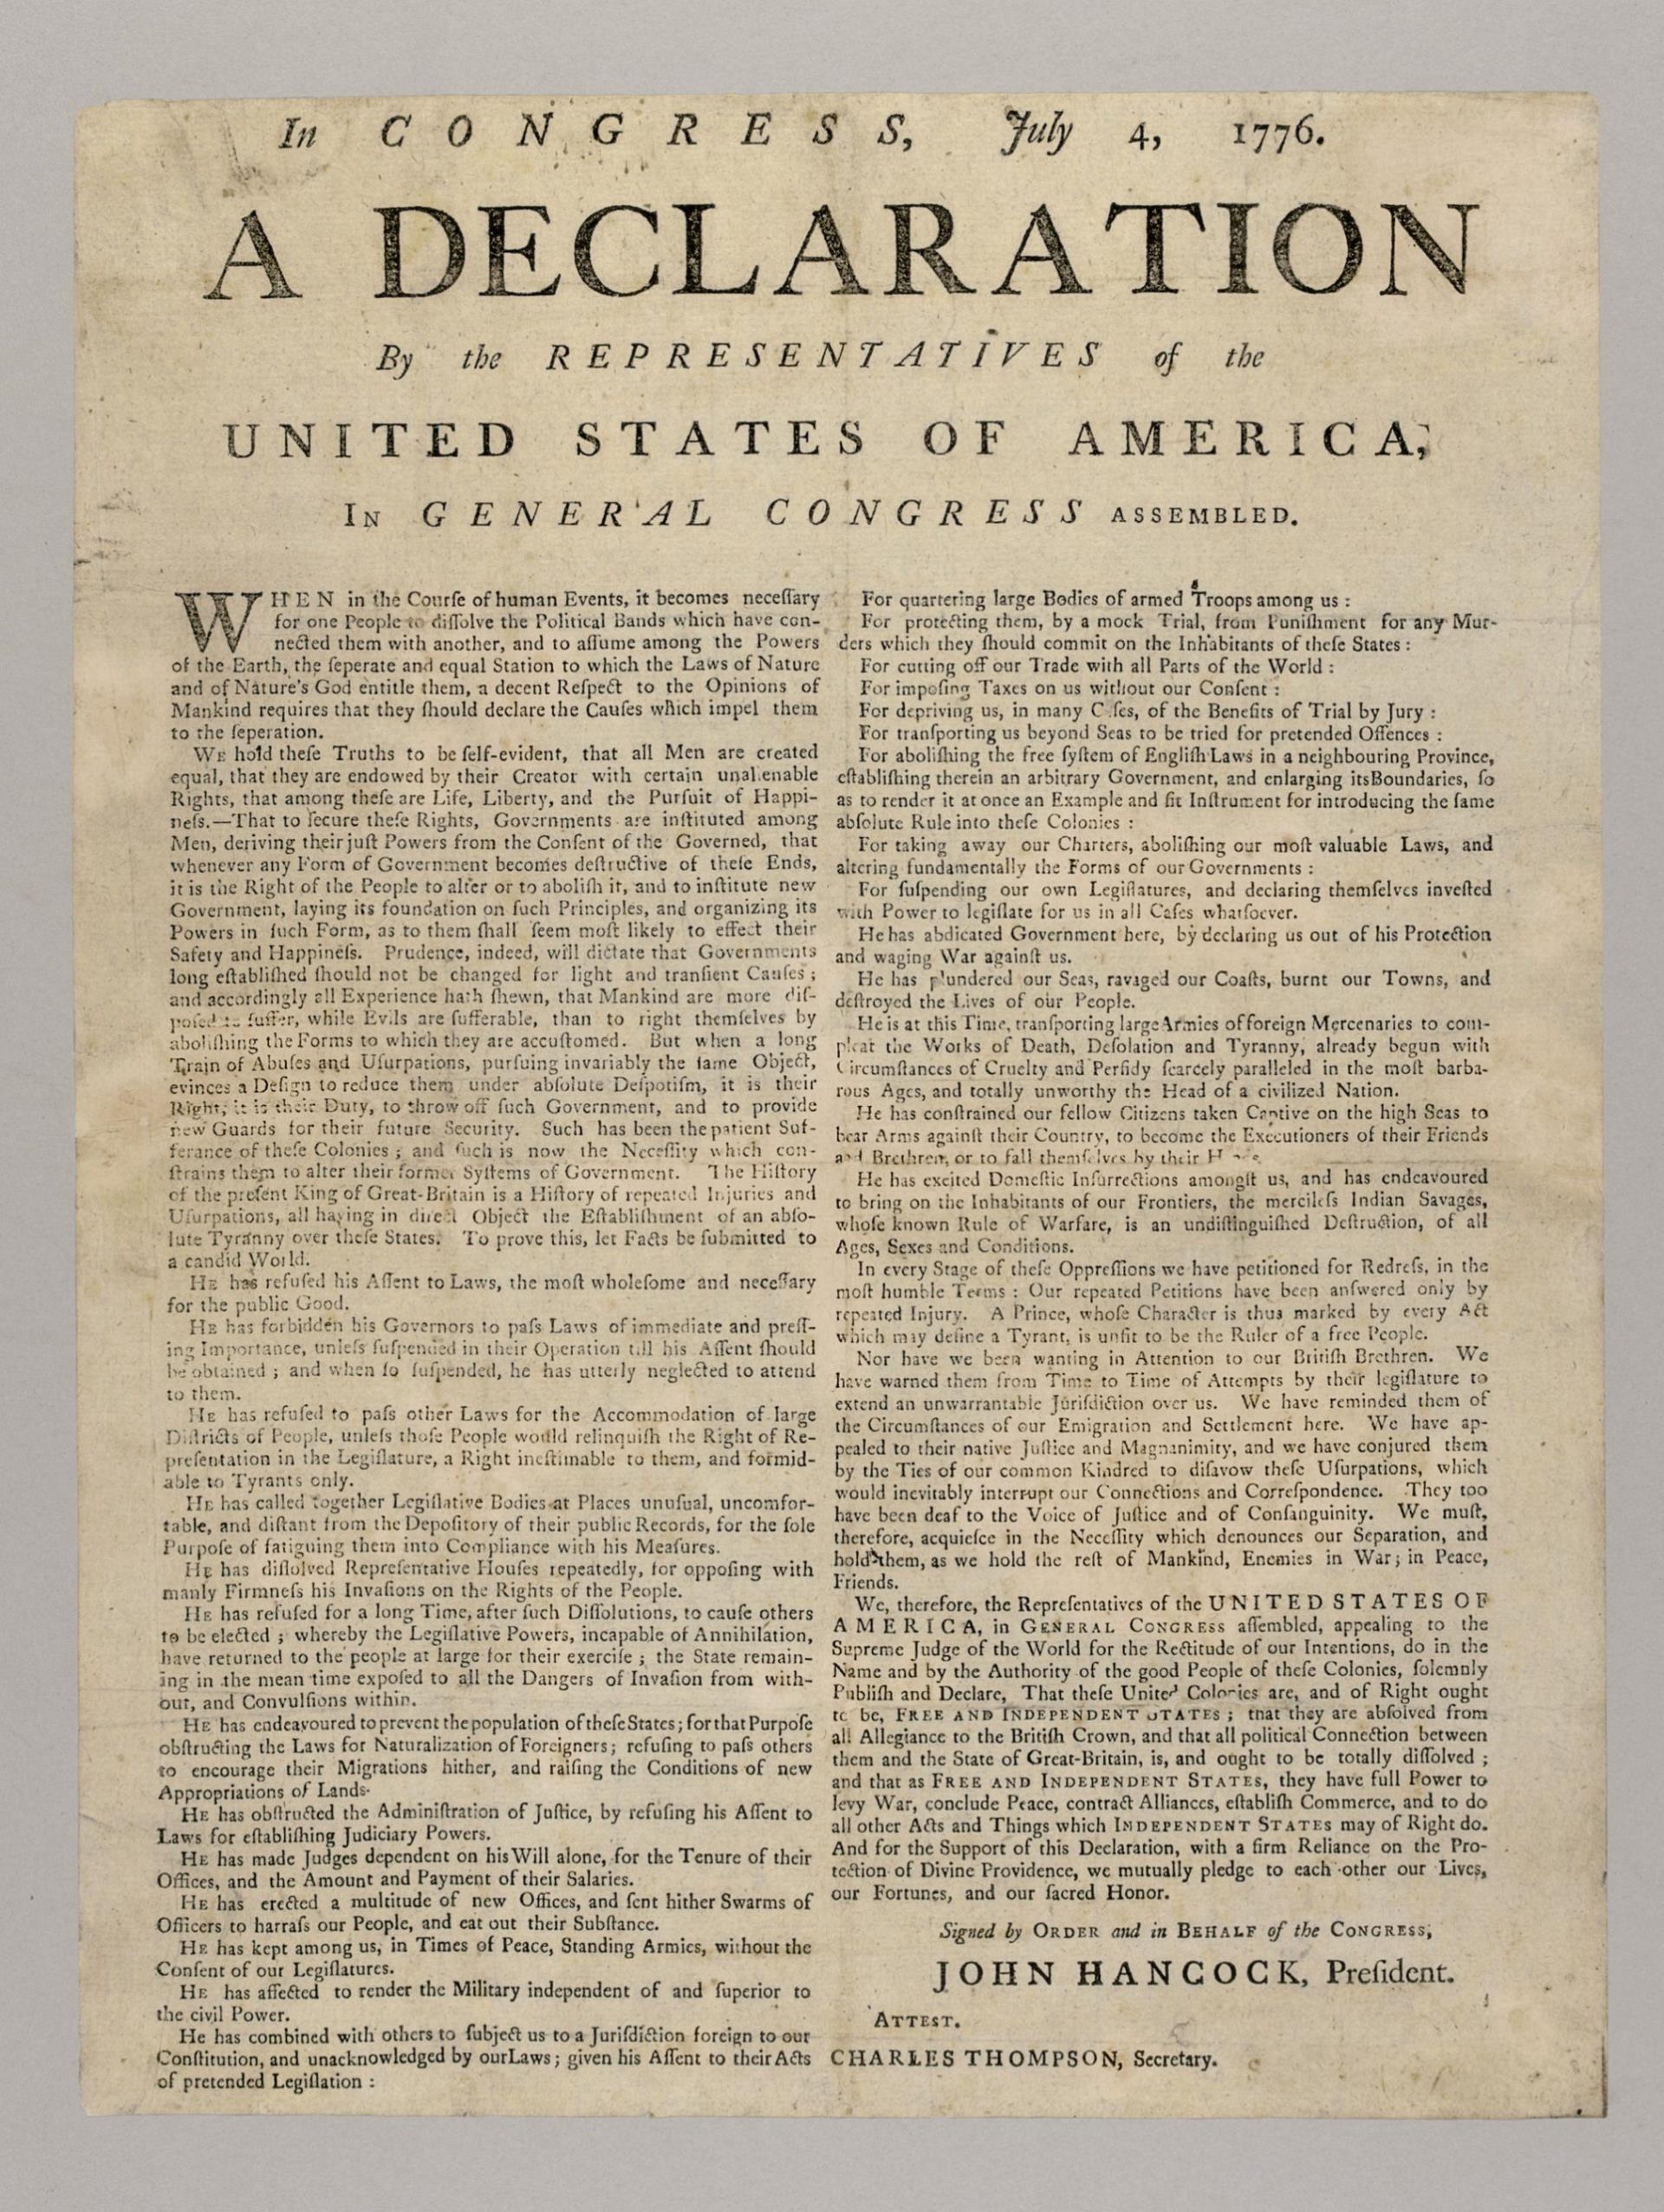 Declaration of Independence broadside, July 1776